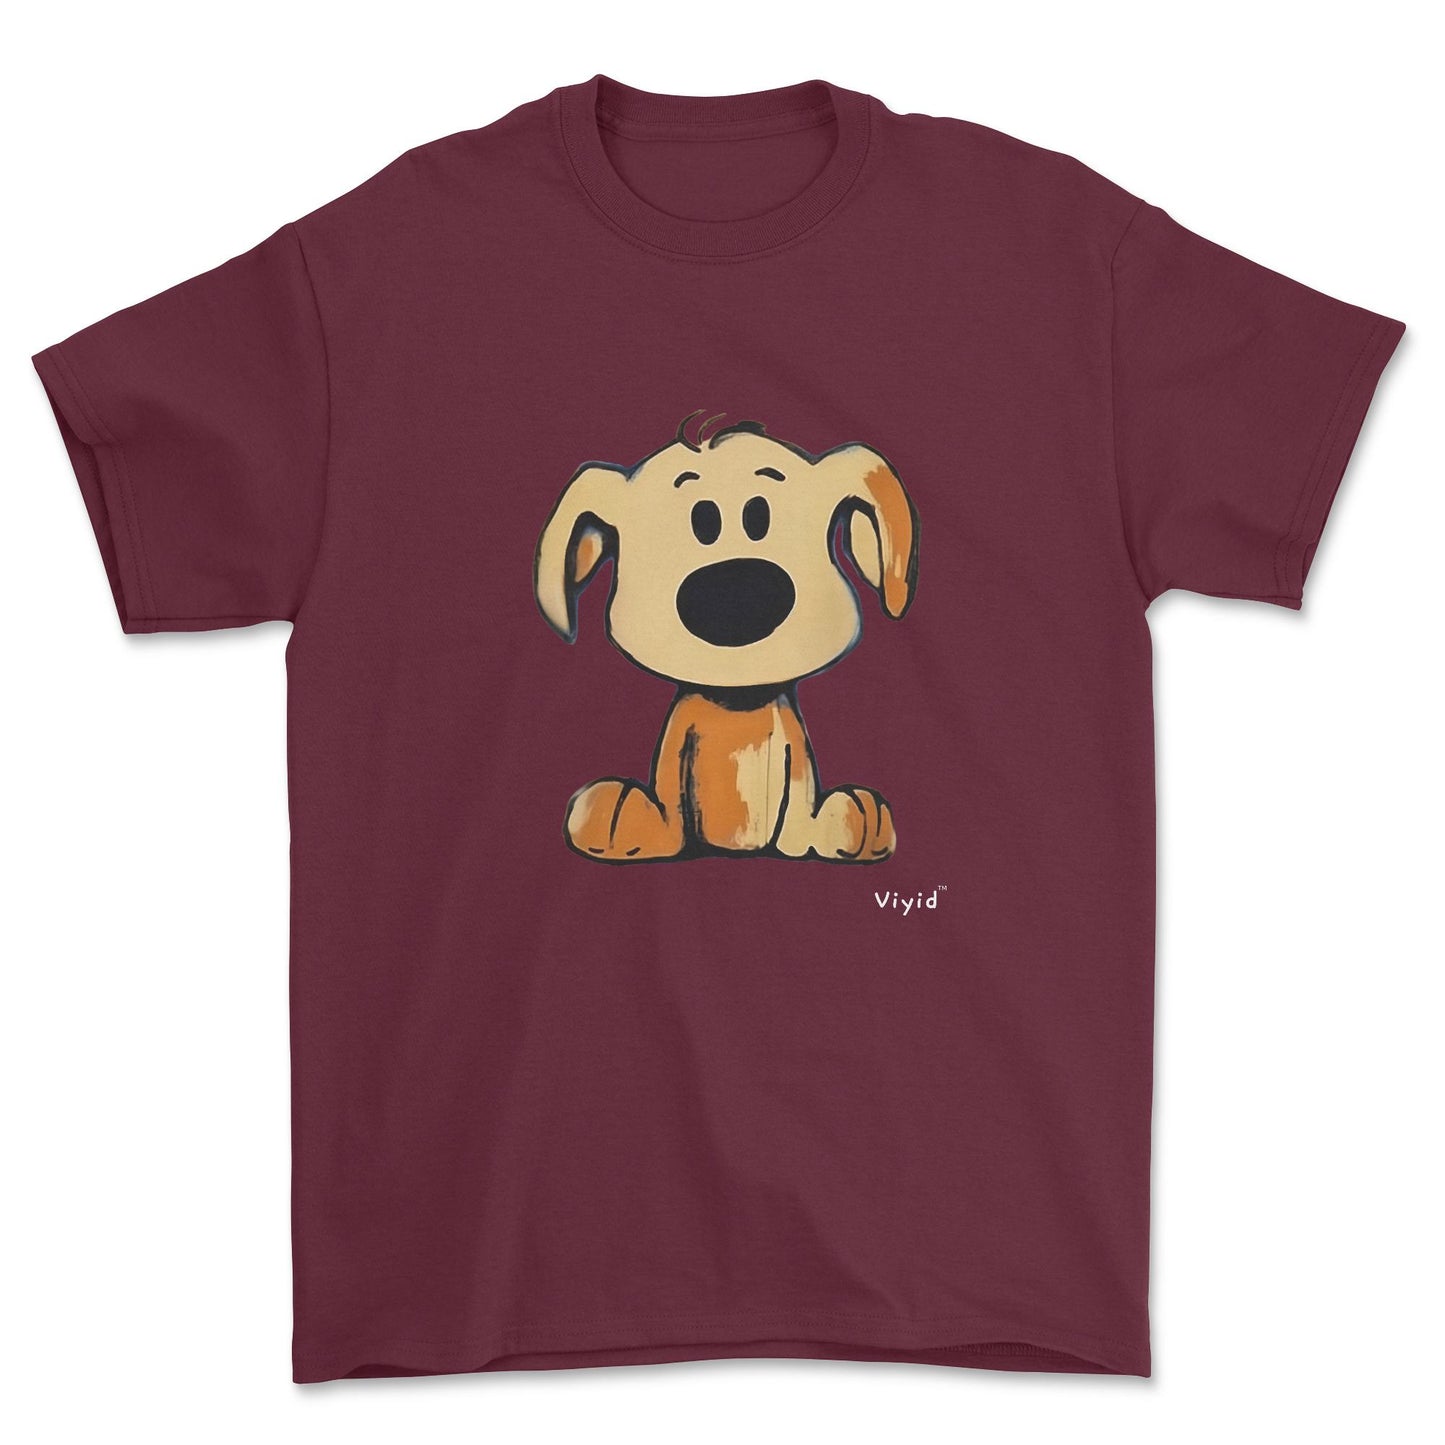 beagle cartoon dog adult t-shirt maroon